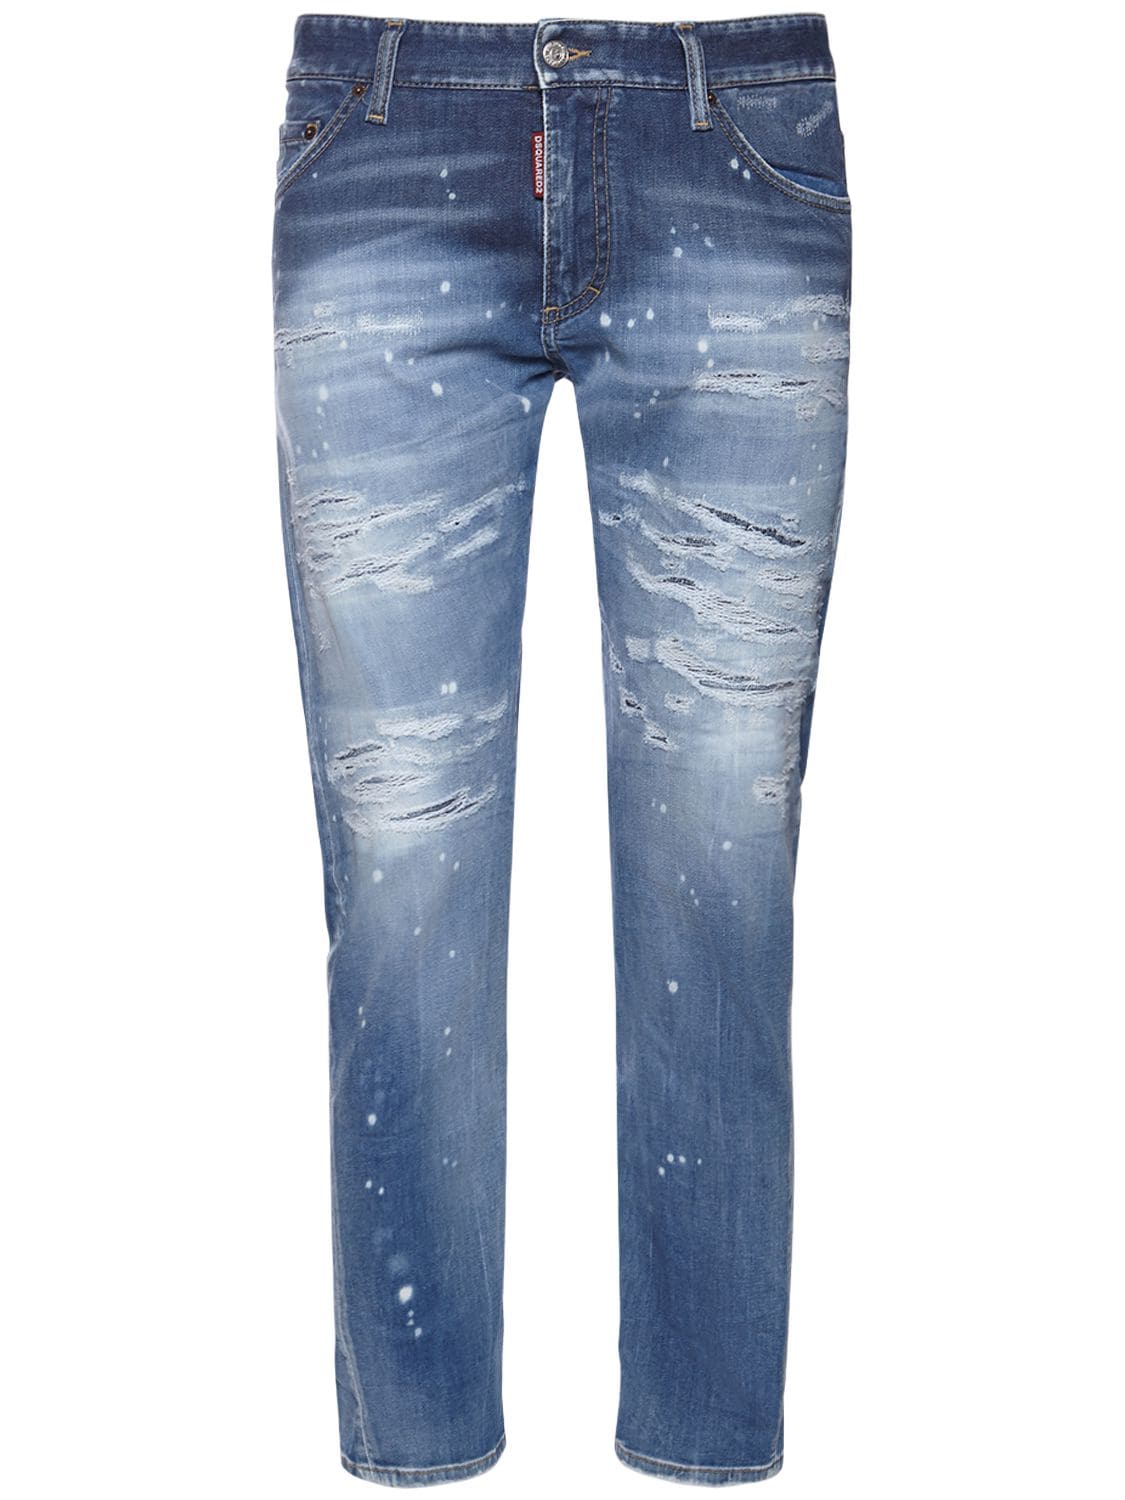 Sexy Twist Cotton Denim Jeans – MEN > CLOTHING > JEANS